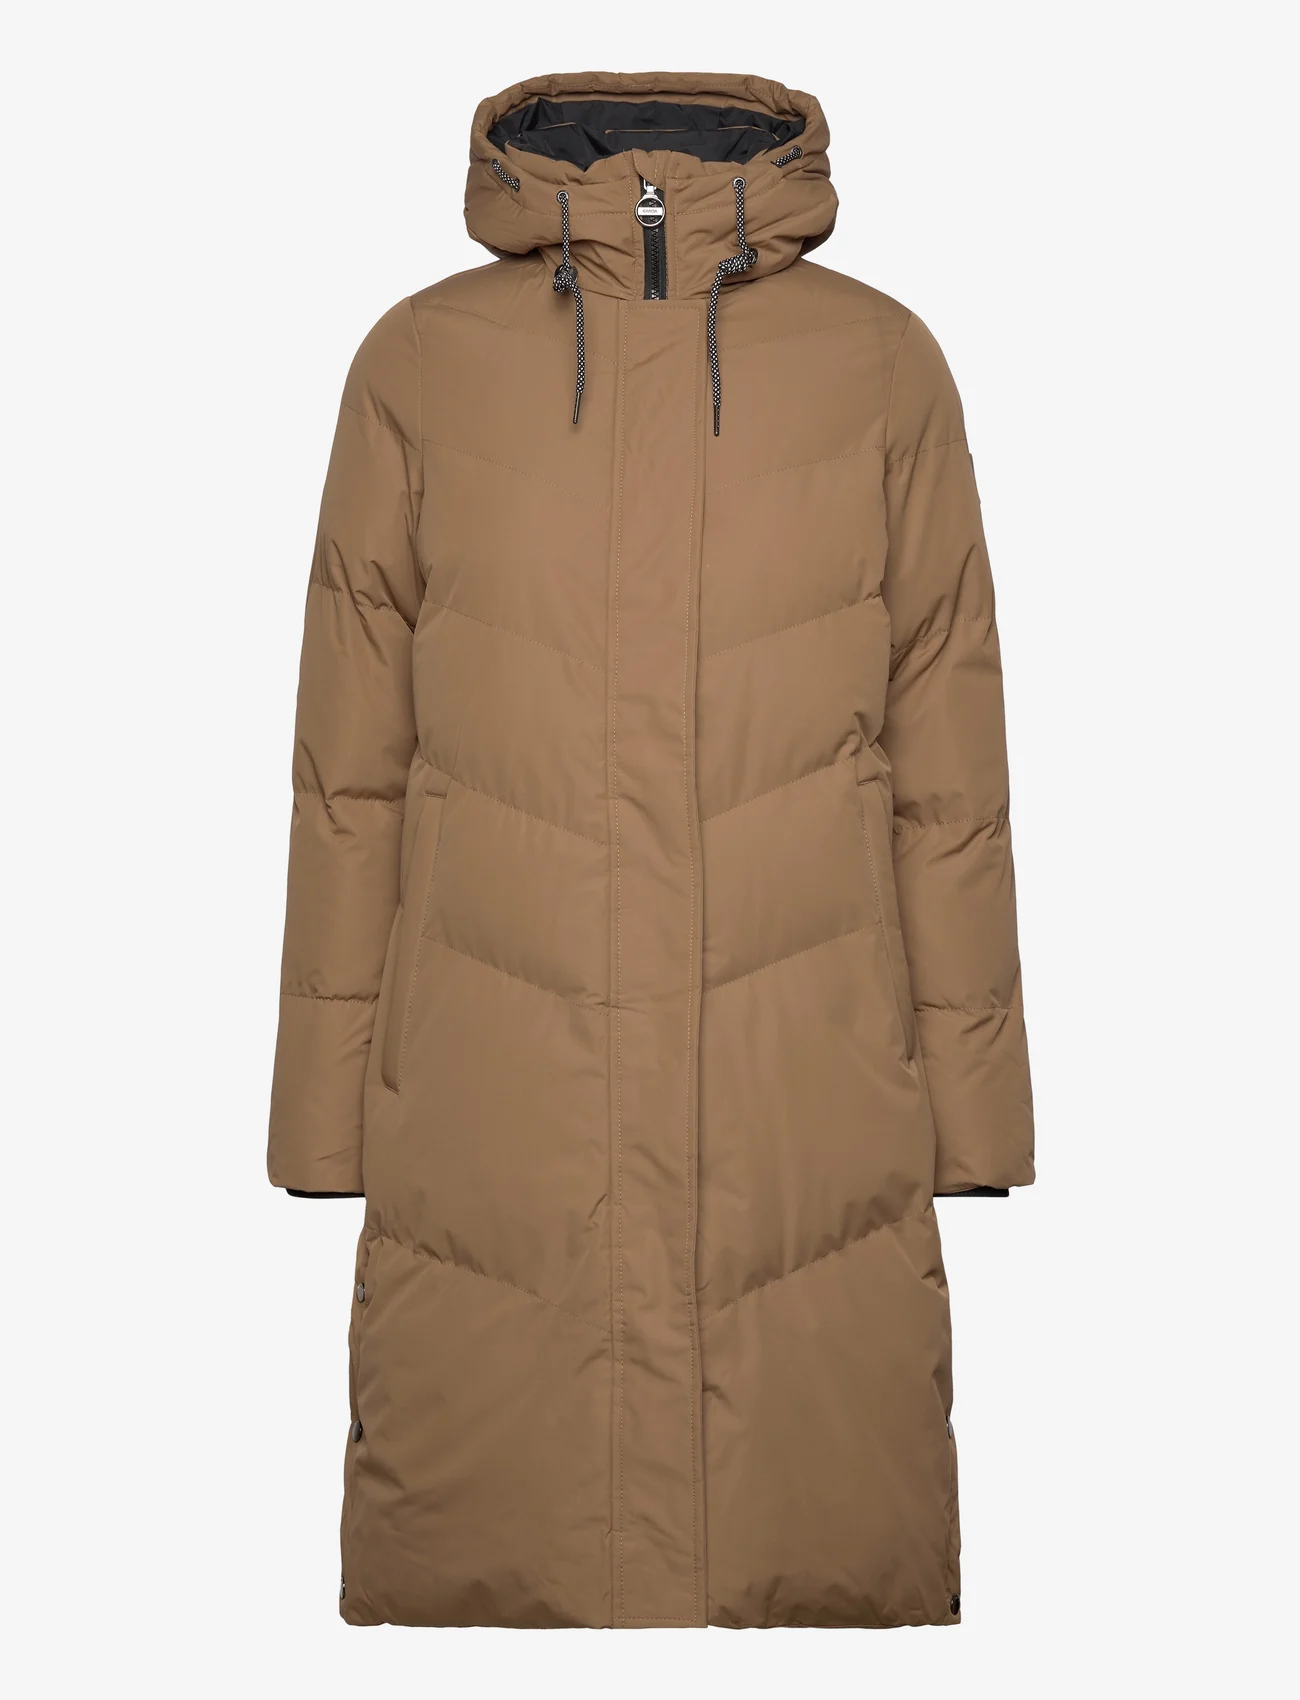 Garcia - ladies outdoor jackets - vinterjakker - brown - 0